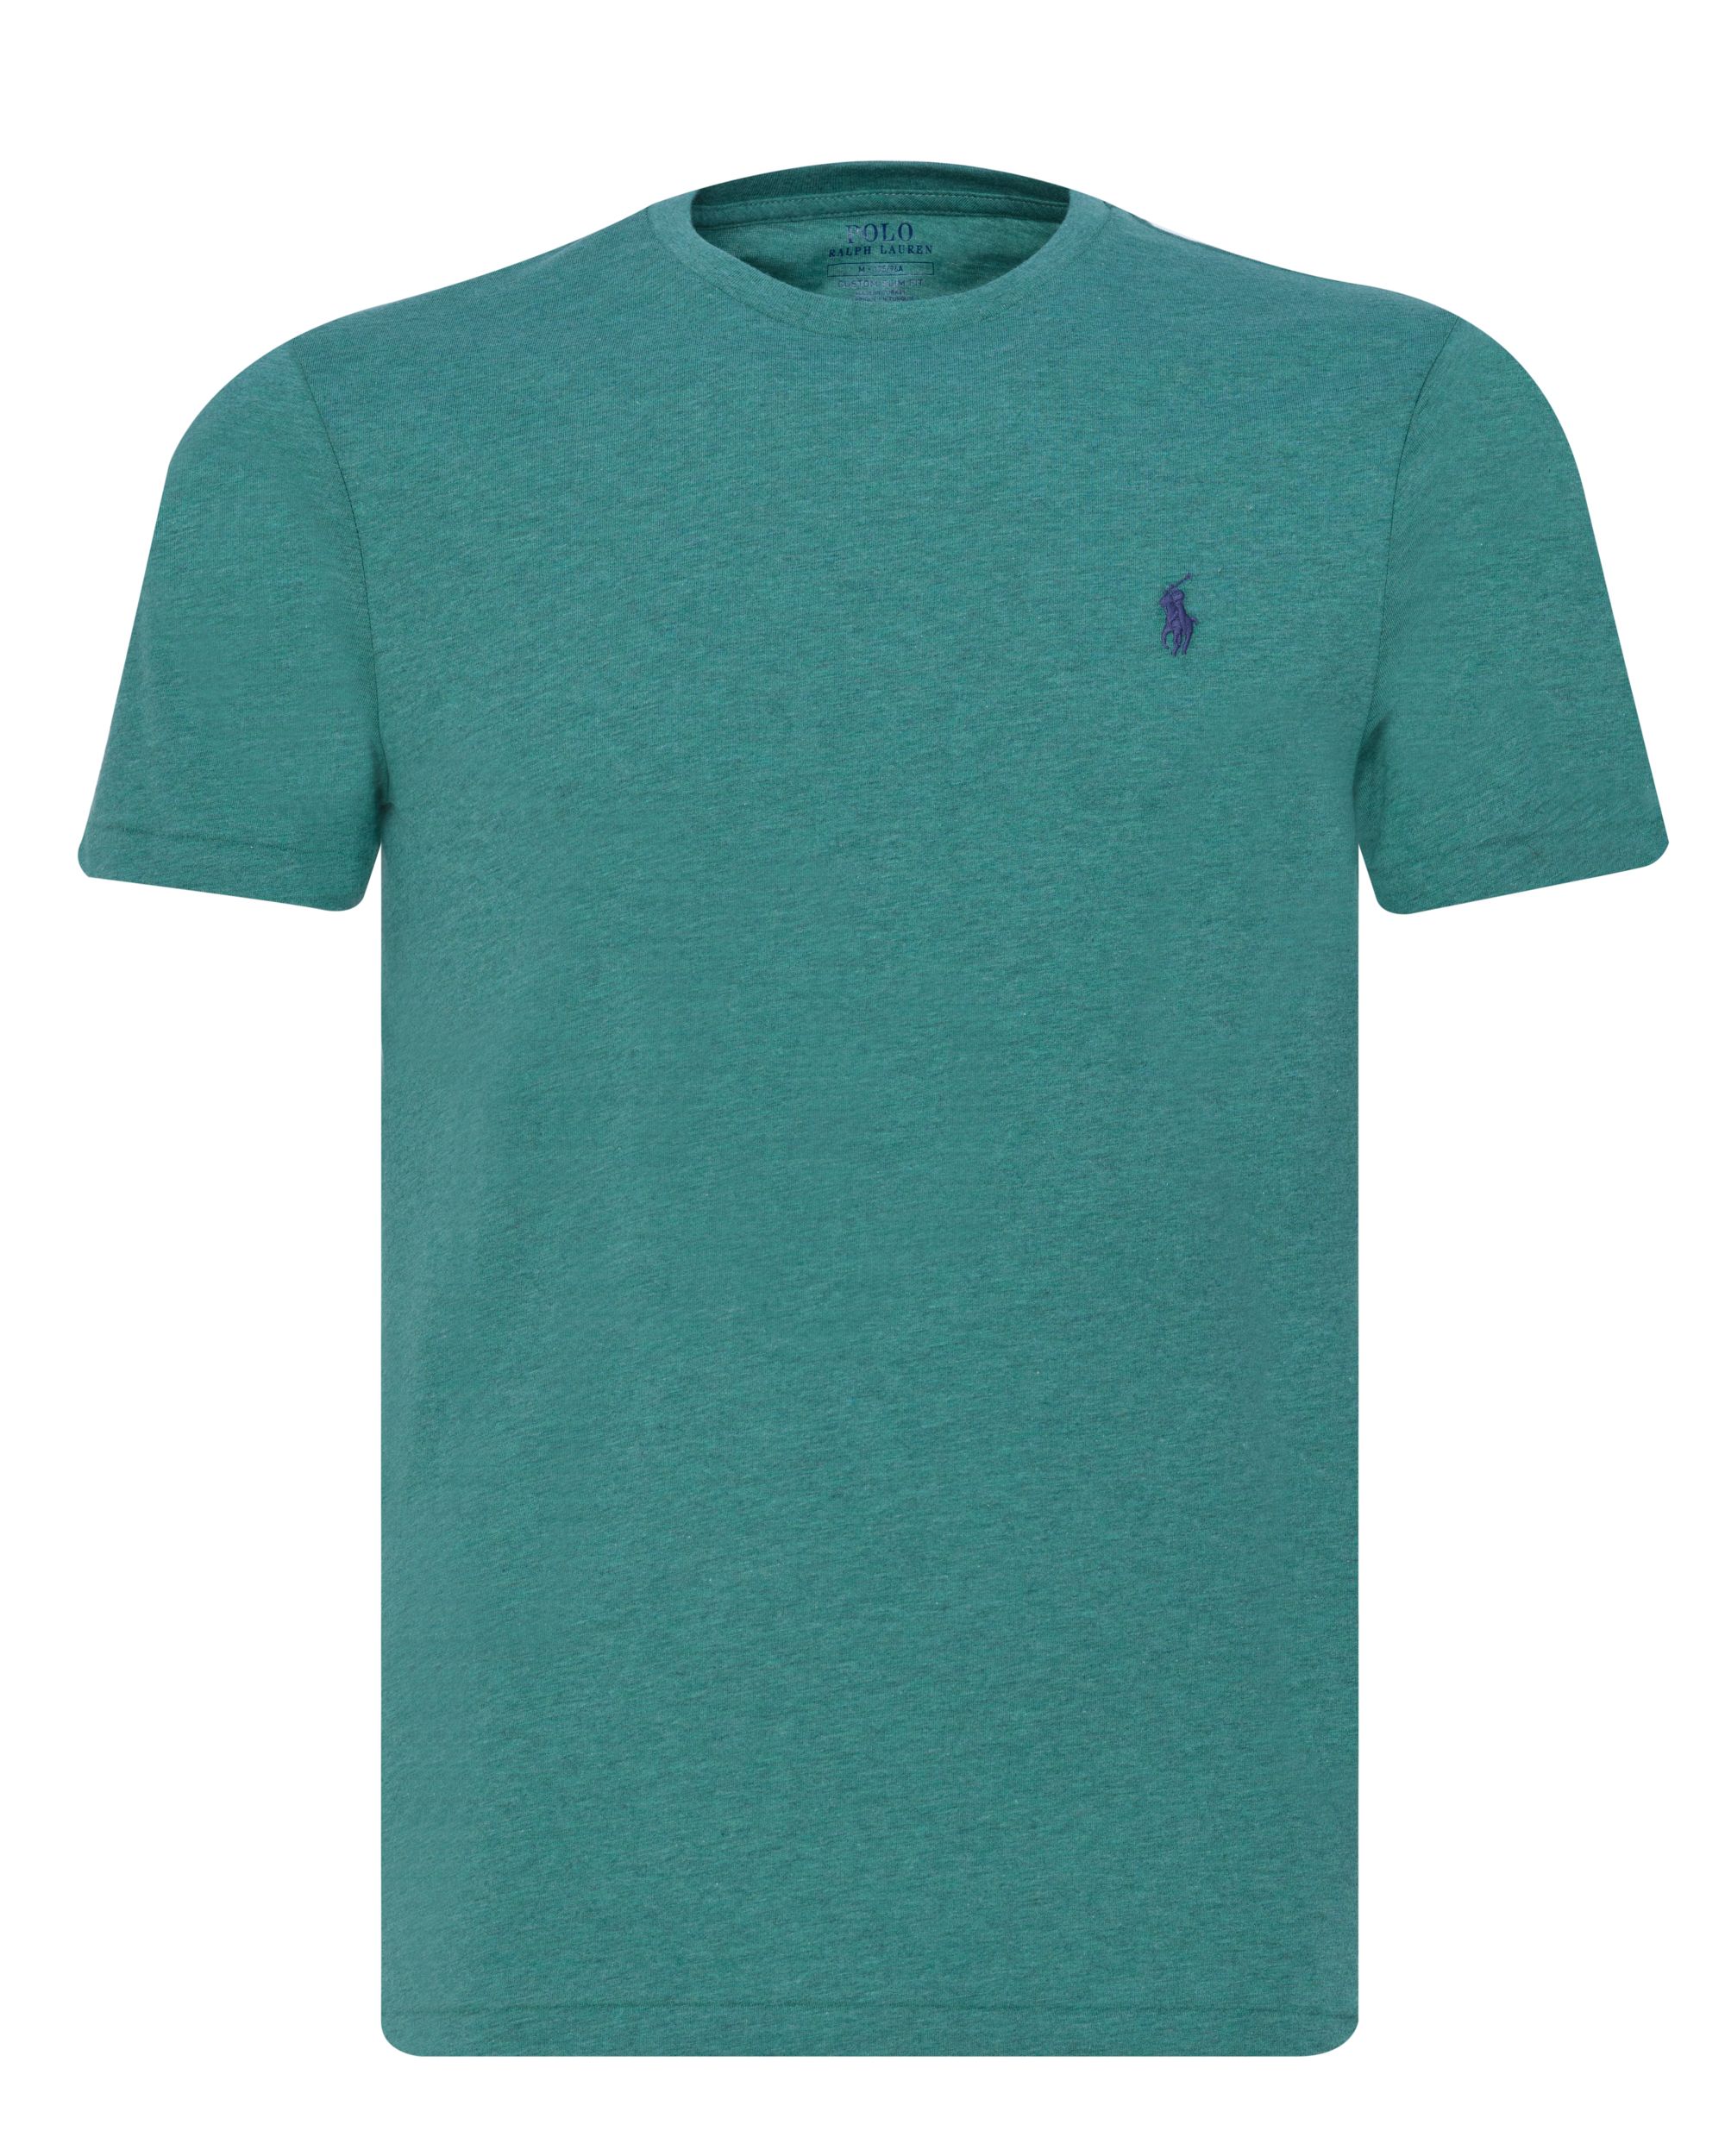 Polo Ralph Lauren T-shirt KM Licht groen 080556-001-L